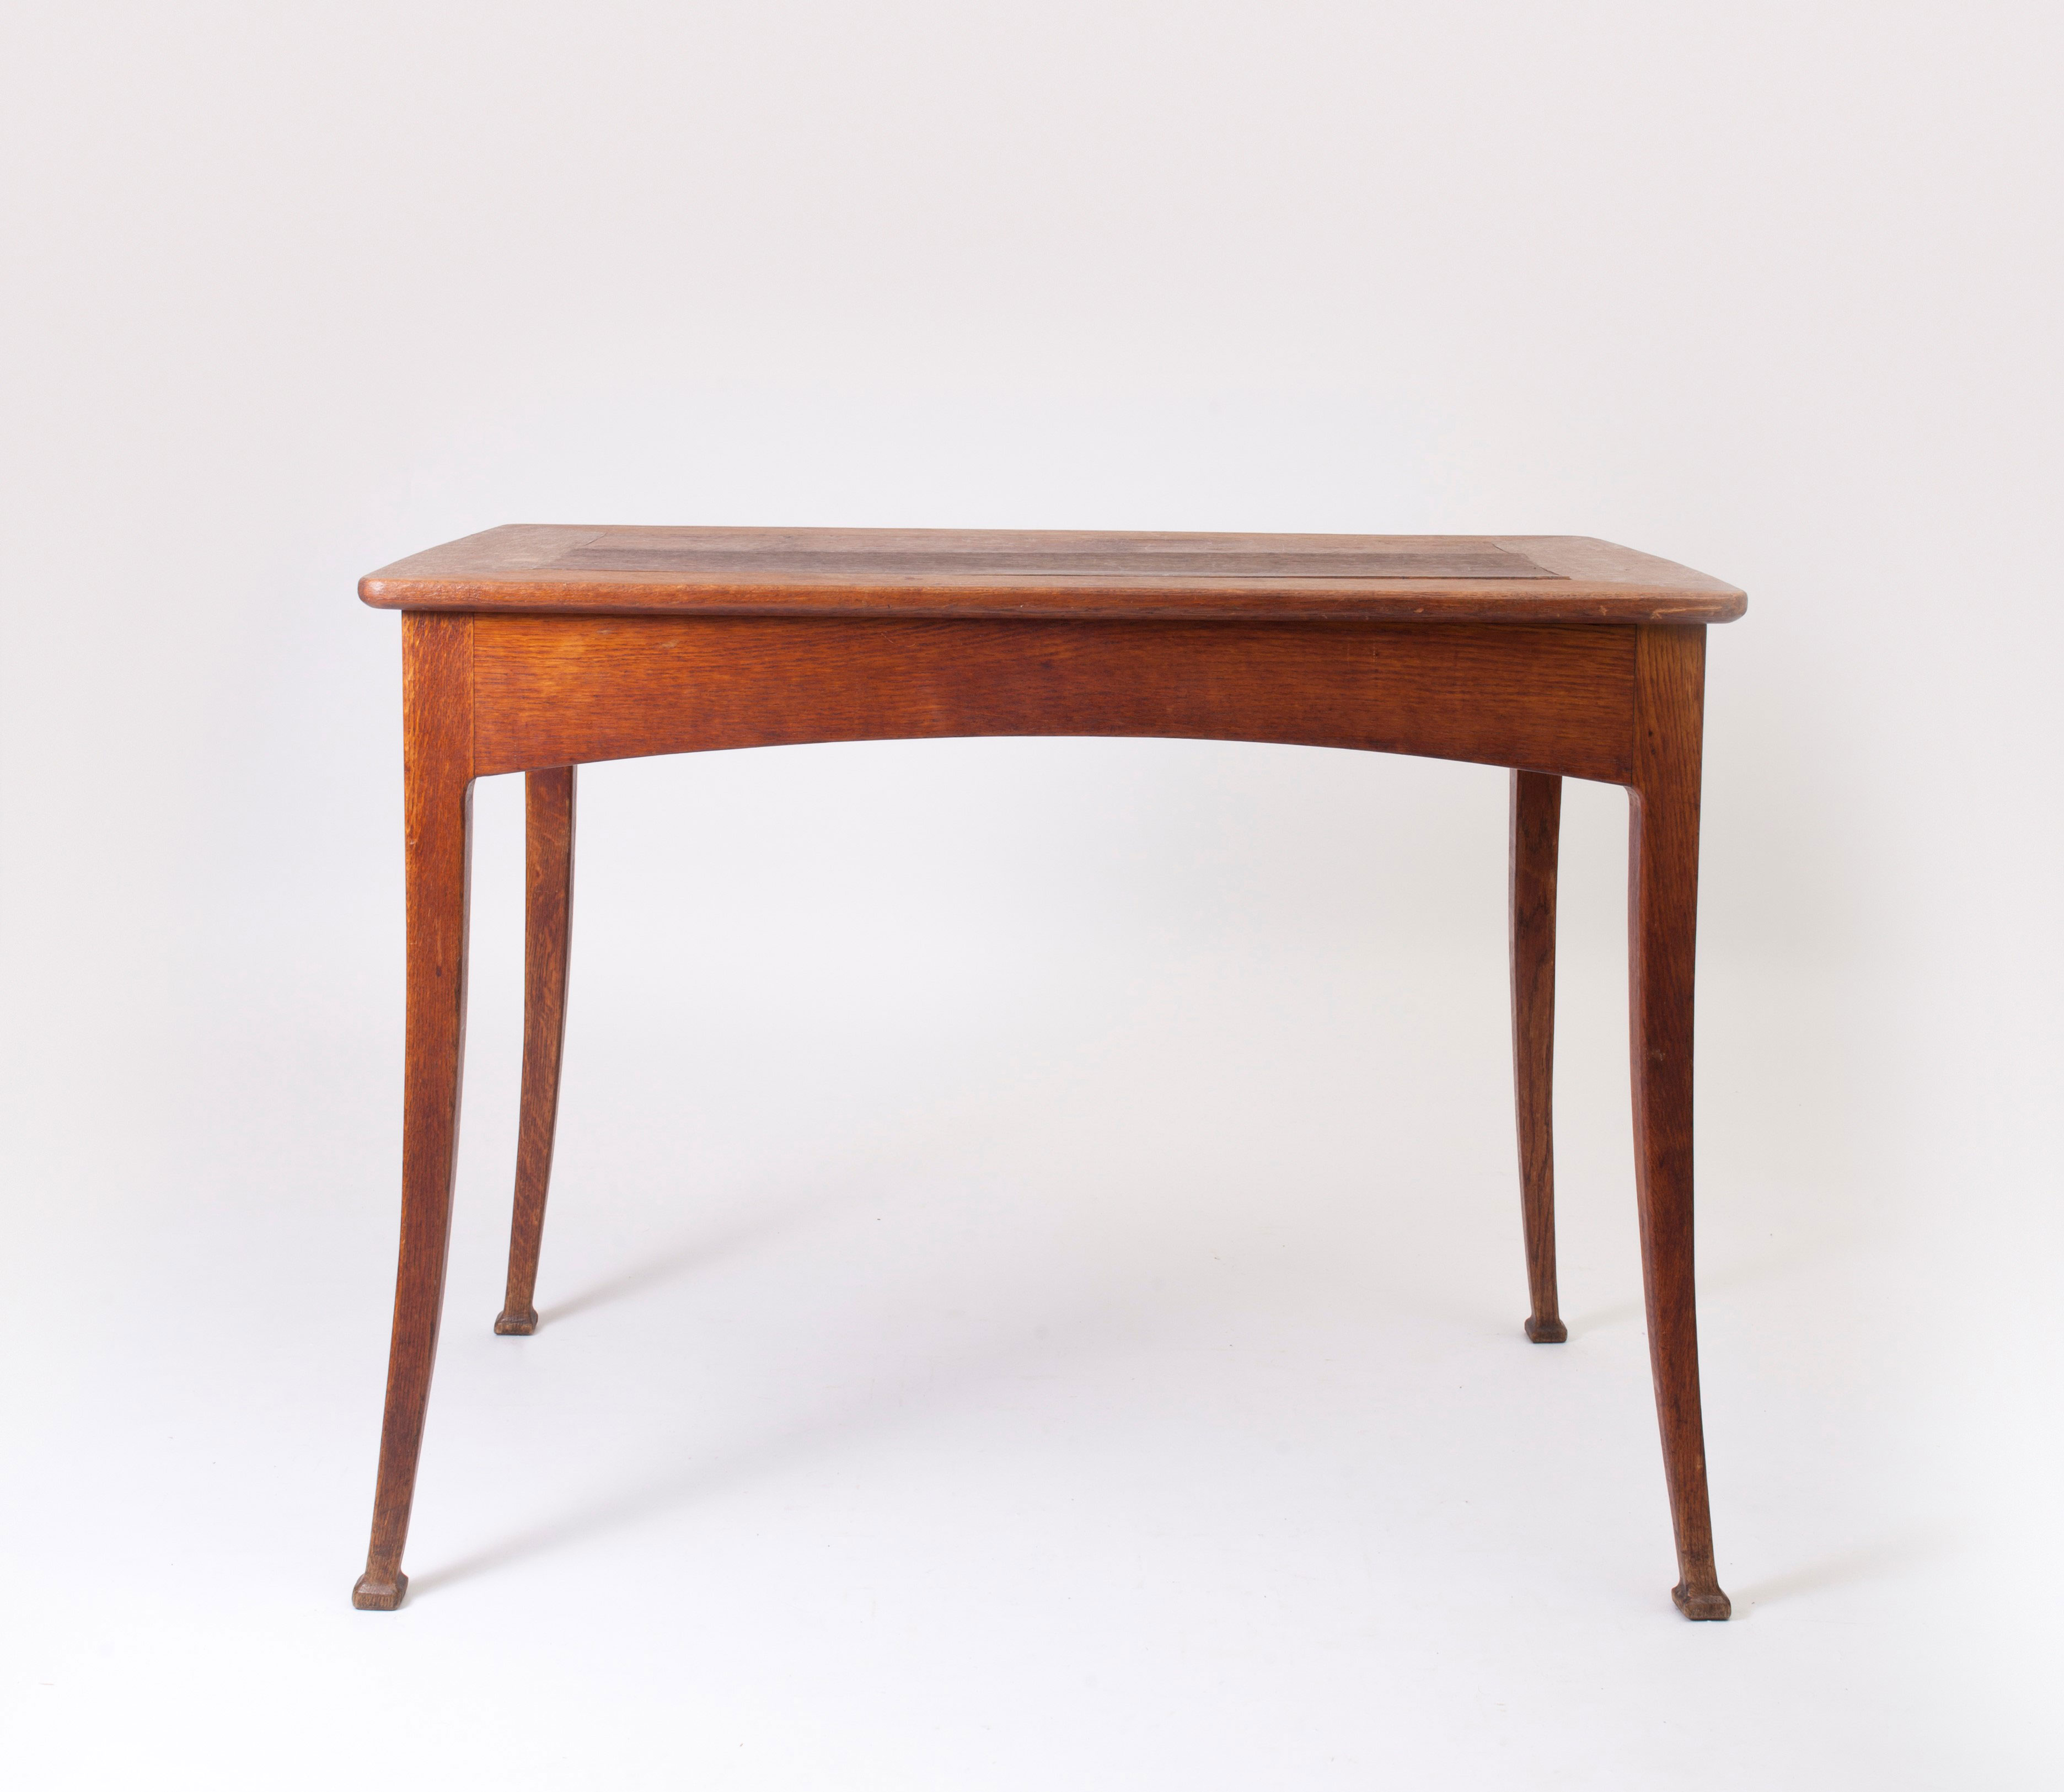 Leon Pavot (1871-1918) Art Nouveau oak table 1900